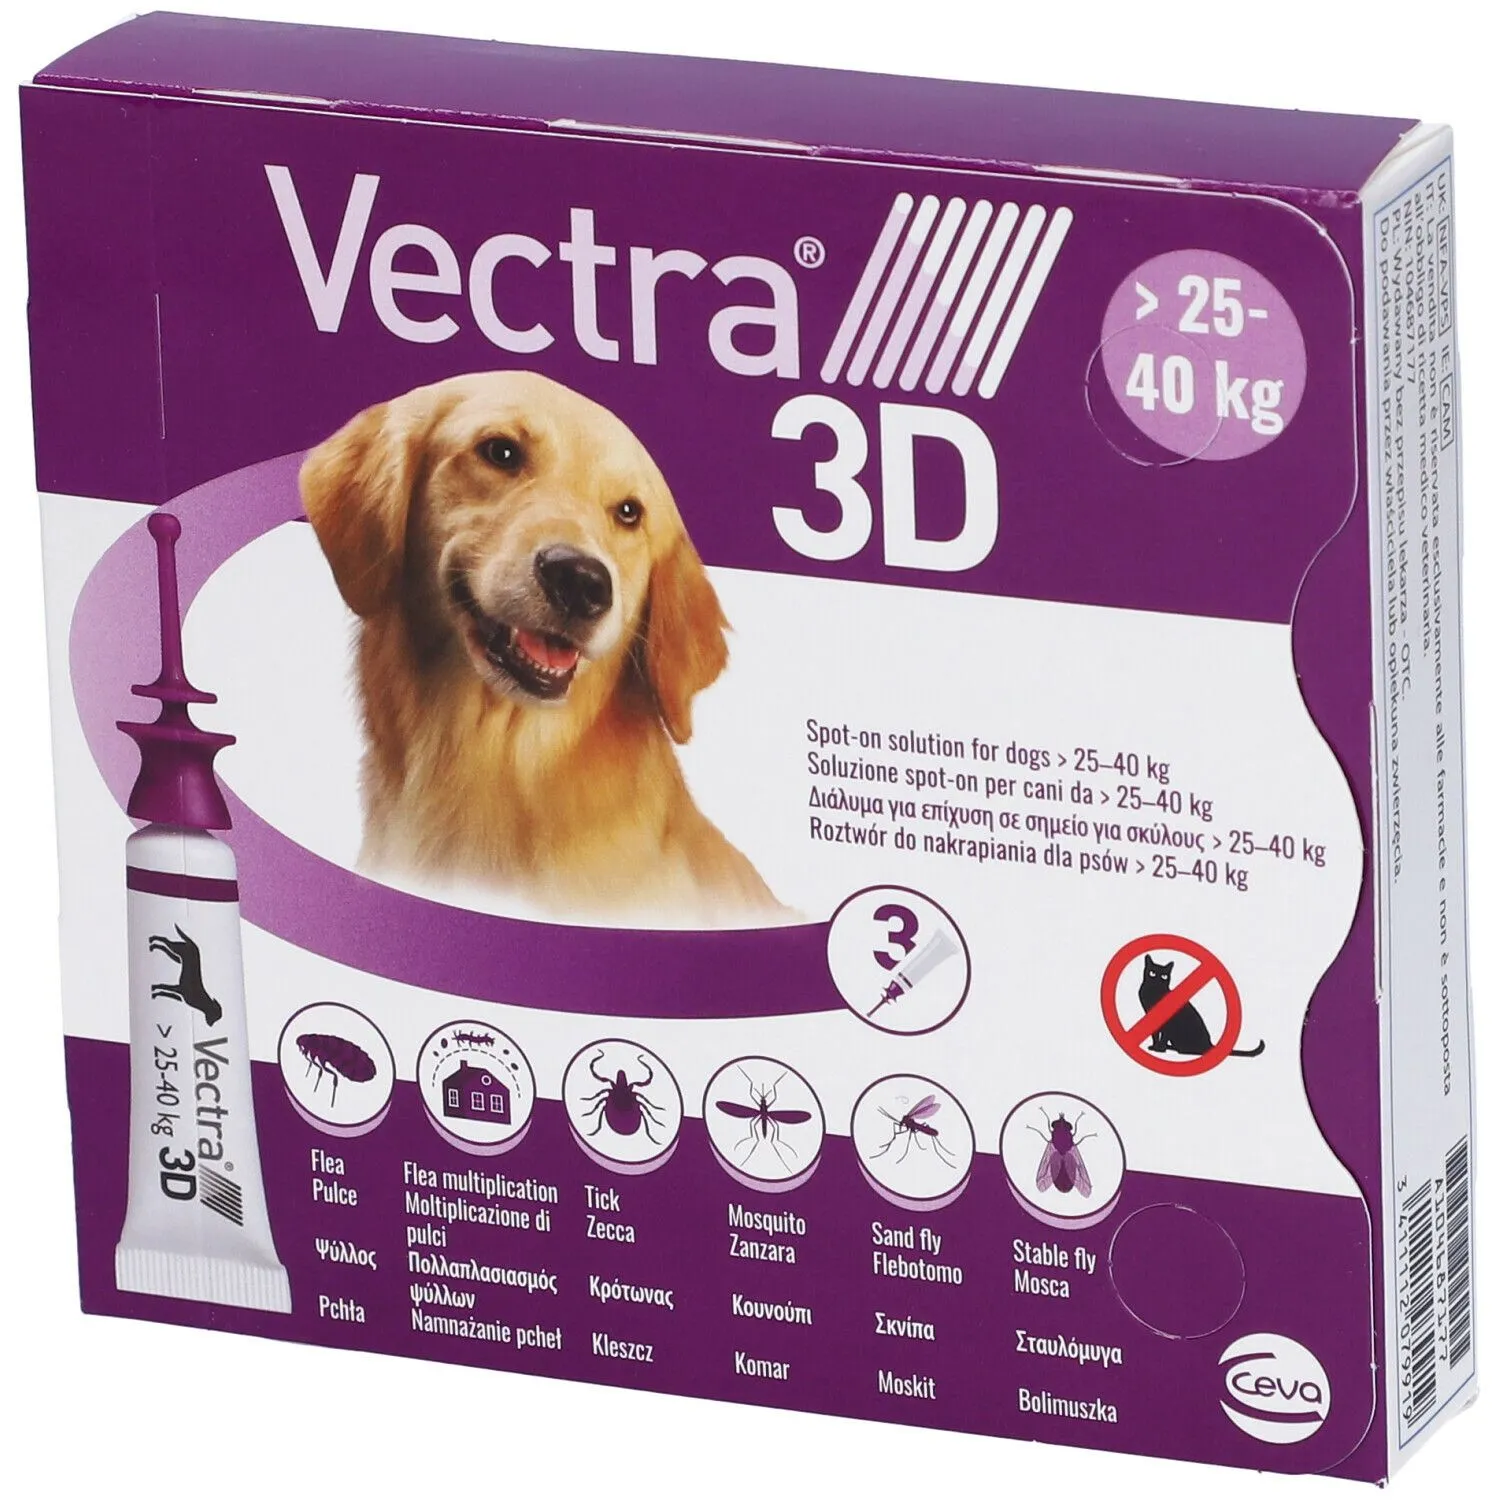 Vectra 3D 3 Pipette Viola 2540 Kg 